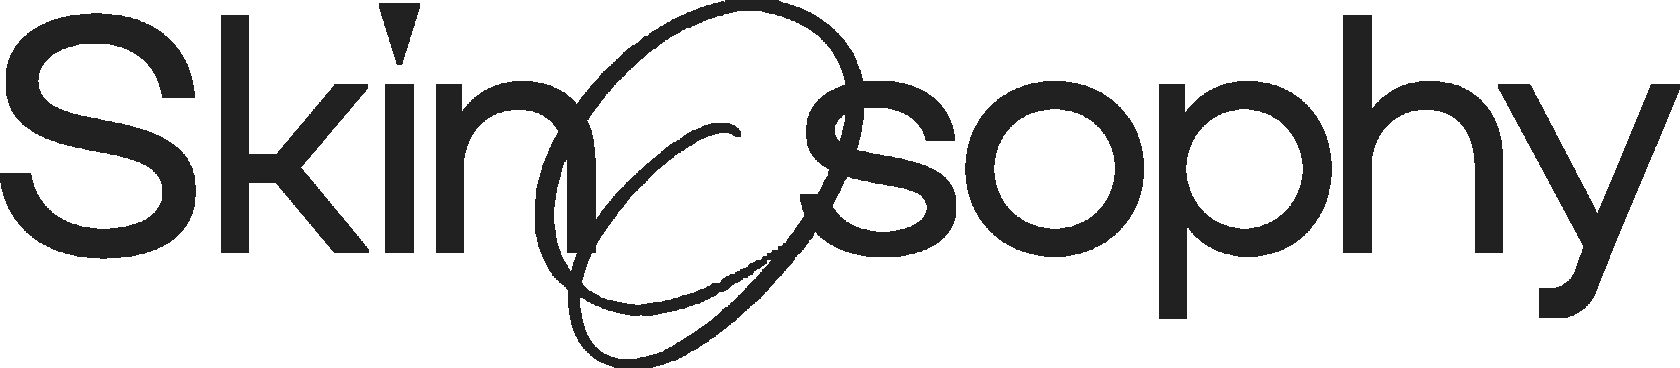 Косметика бренда SKINOSOPHY, логотип